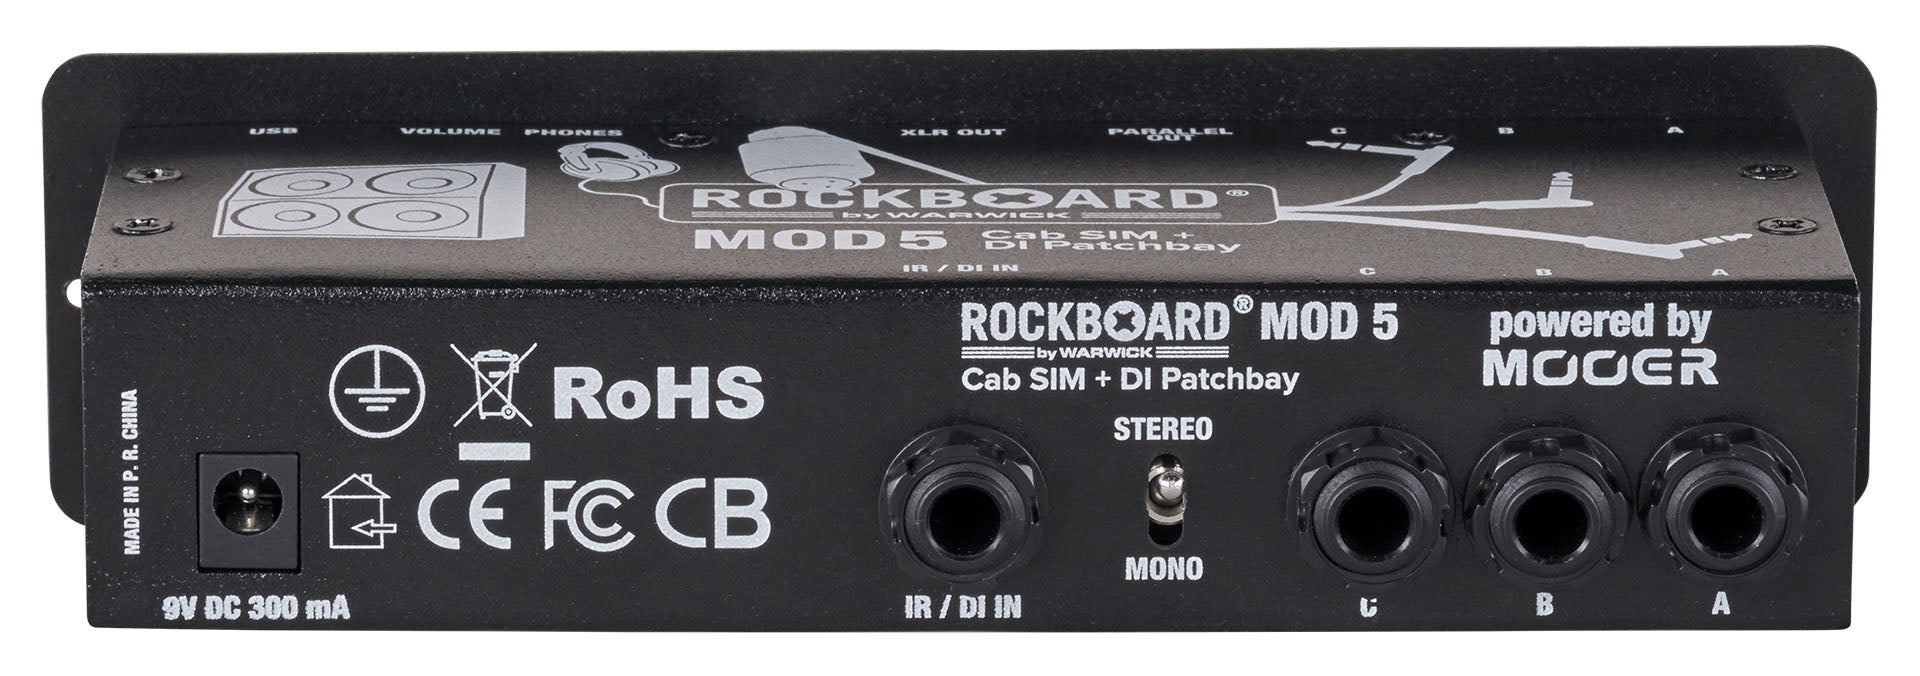 RockBoard MOD 5 - Cab SIM + DI Patchbay